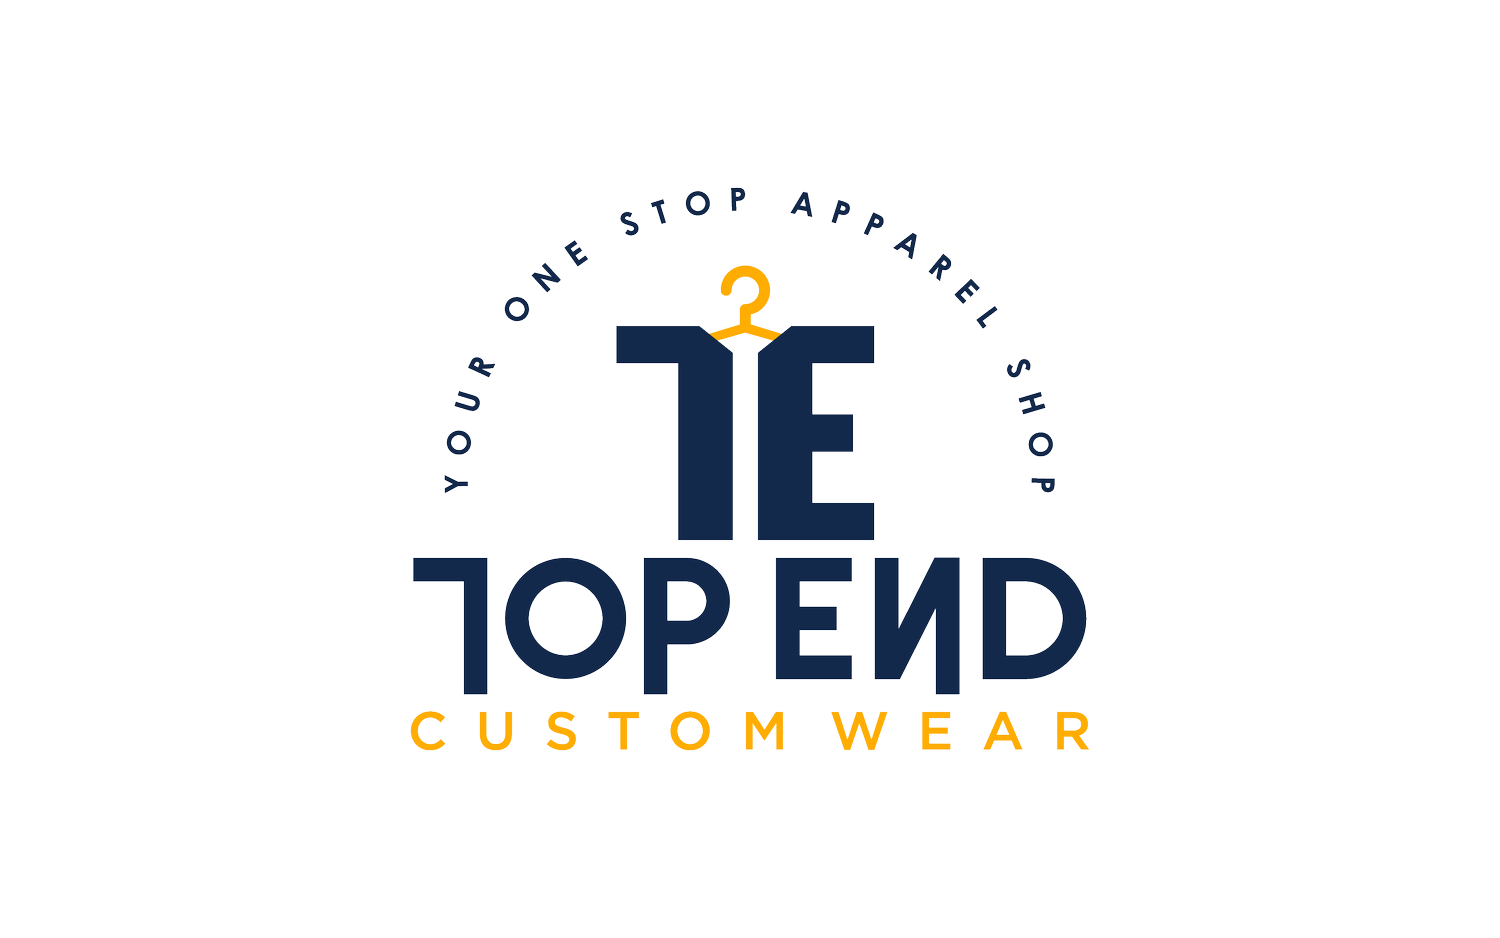 Top End Custom Wear